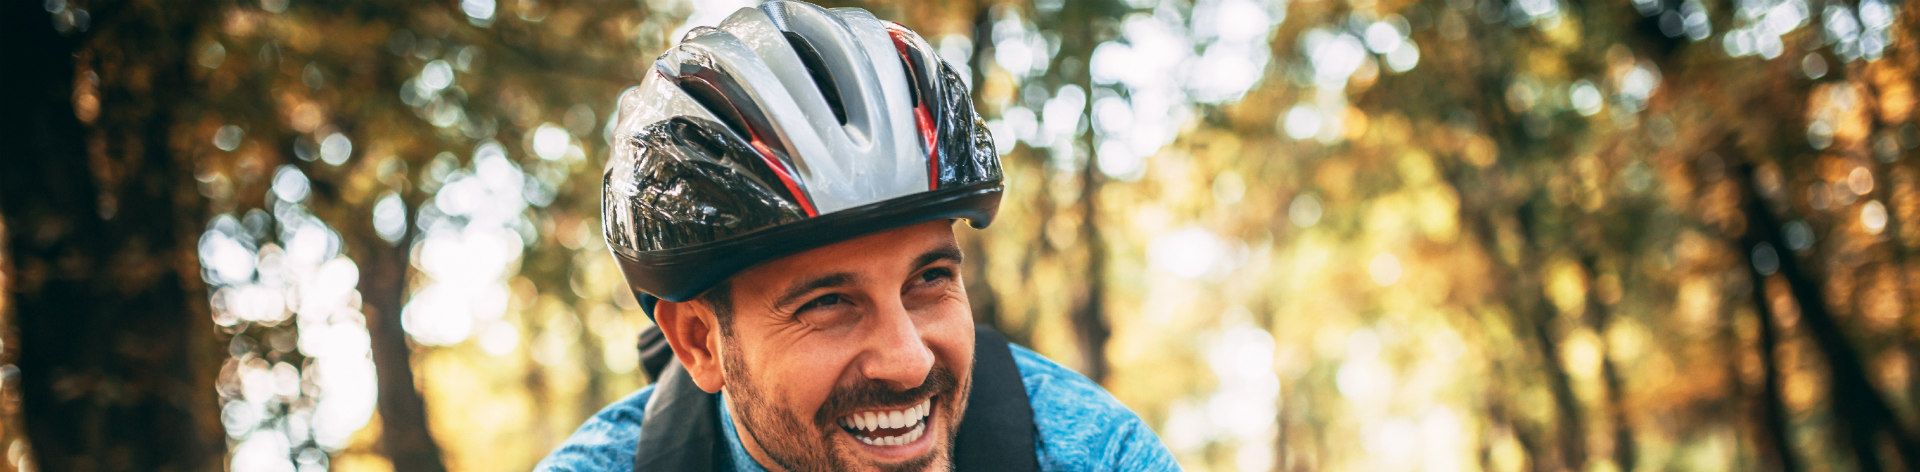 online bike helmets men